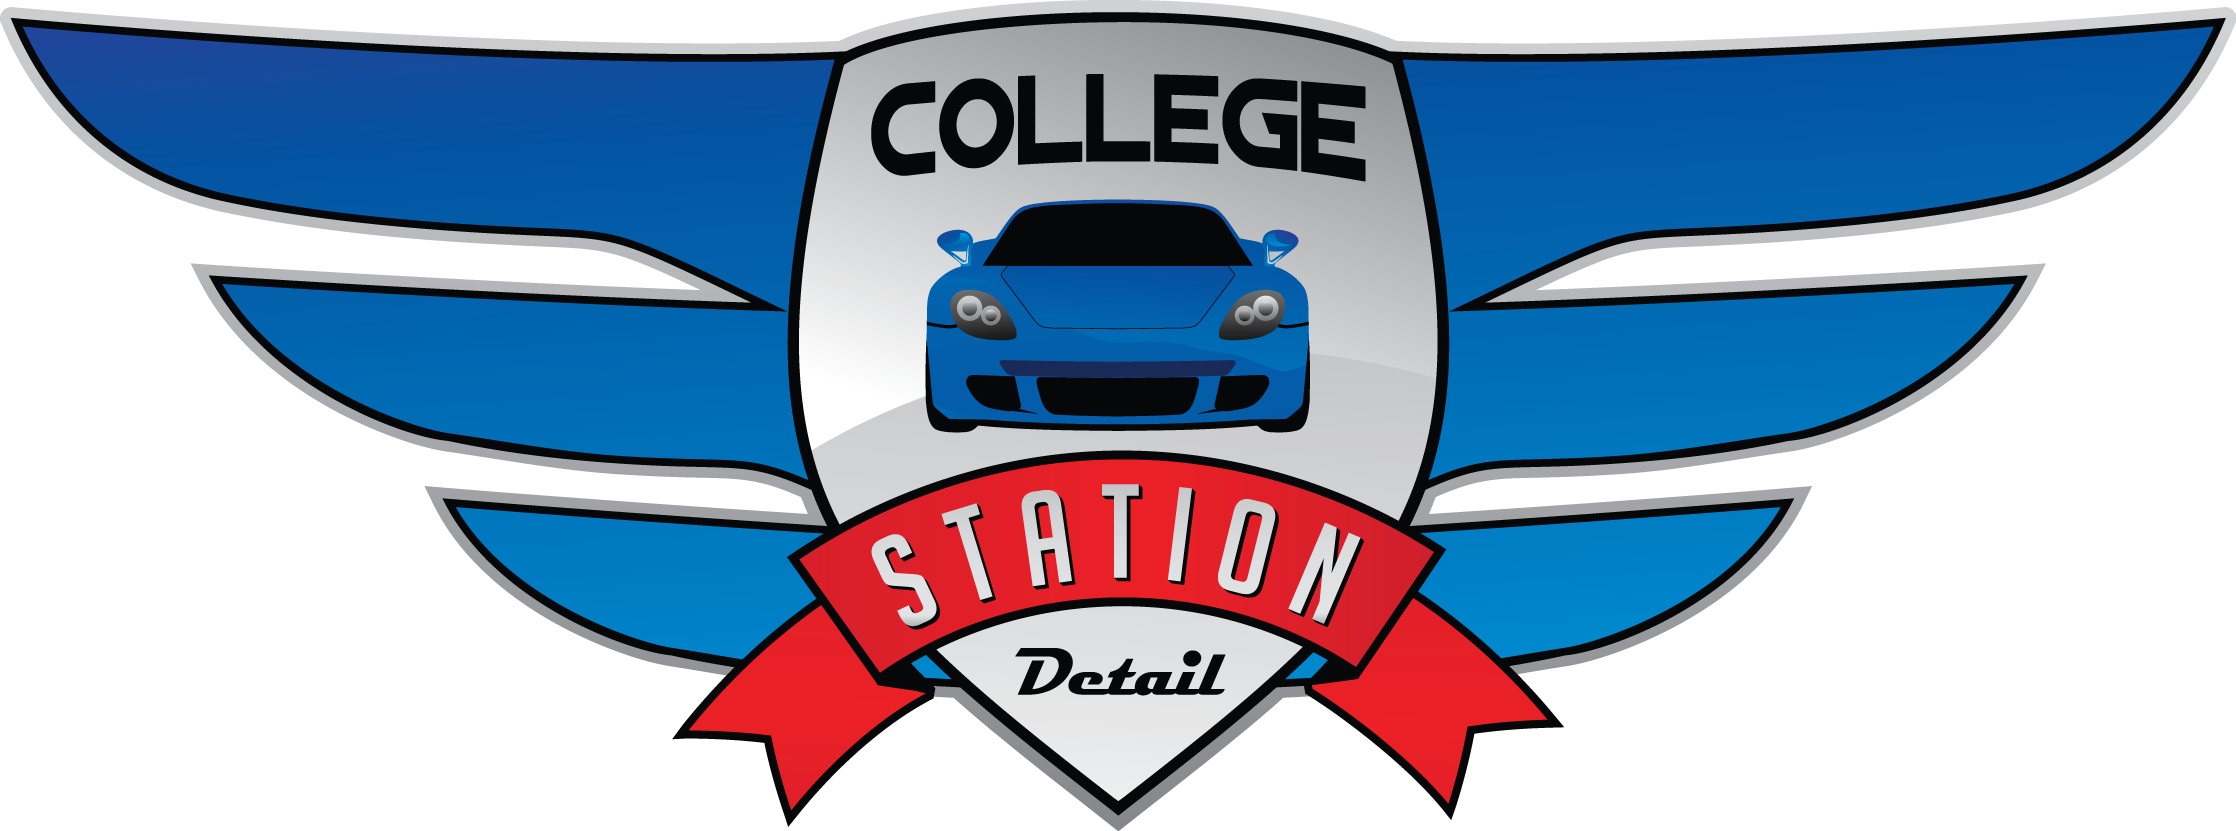 College Station Detail - College Station Detail (2236x831)